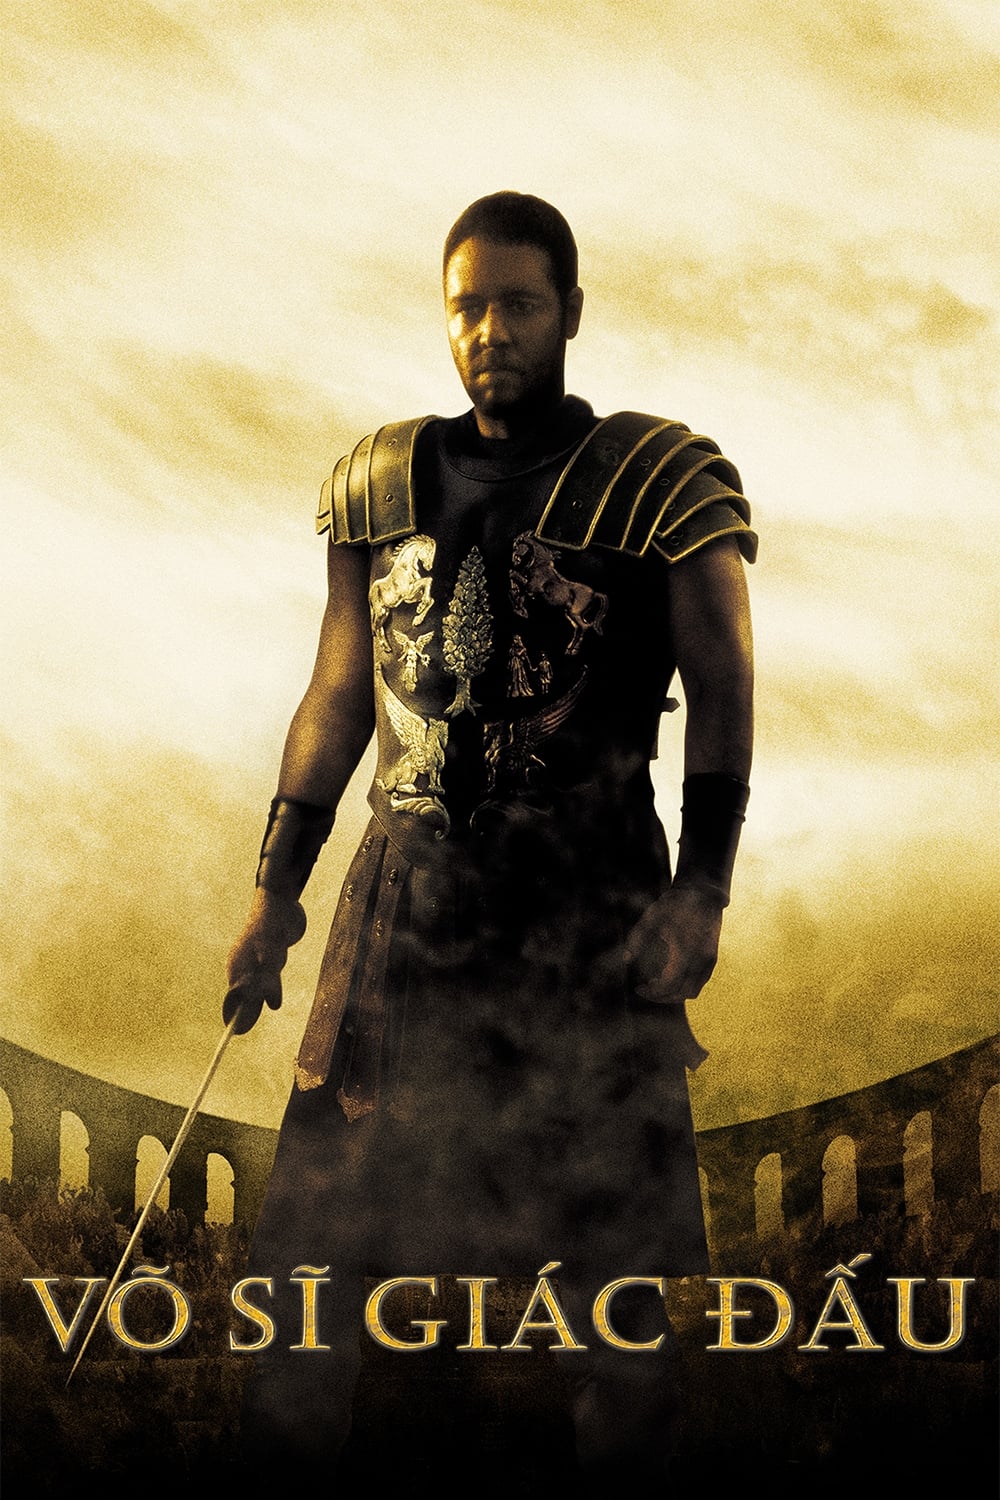 Poster Phim Võ Sĩ Giác Đấu (Gladiator)